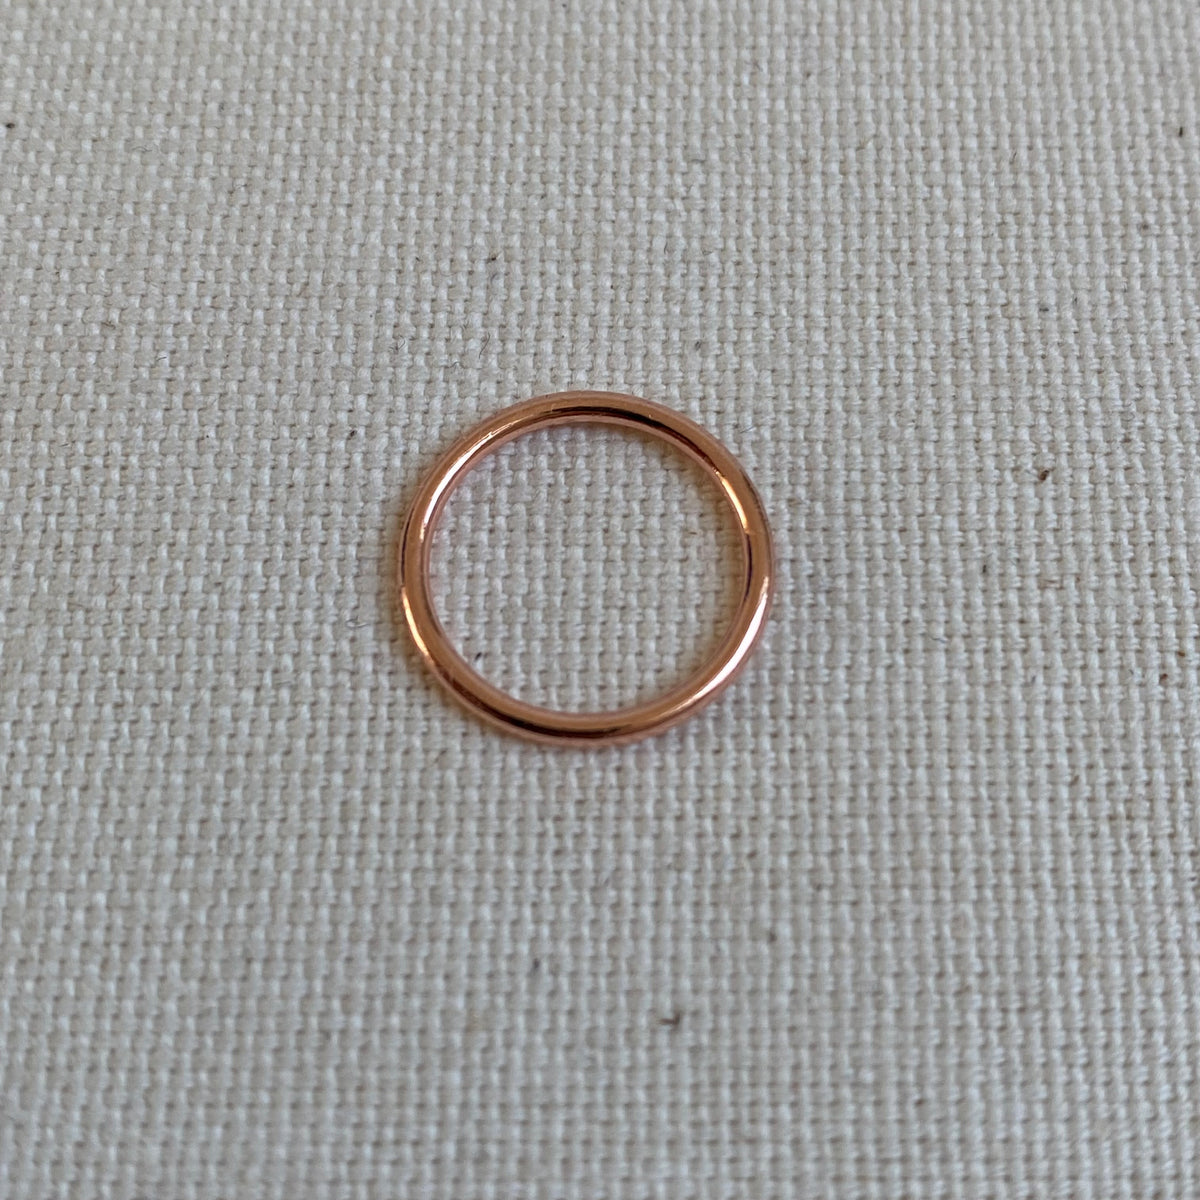 Rose Gold Metal Ring - 12mm